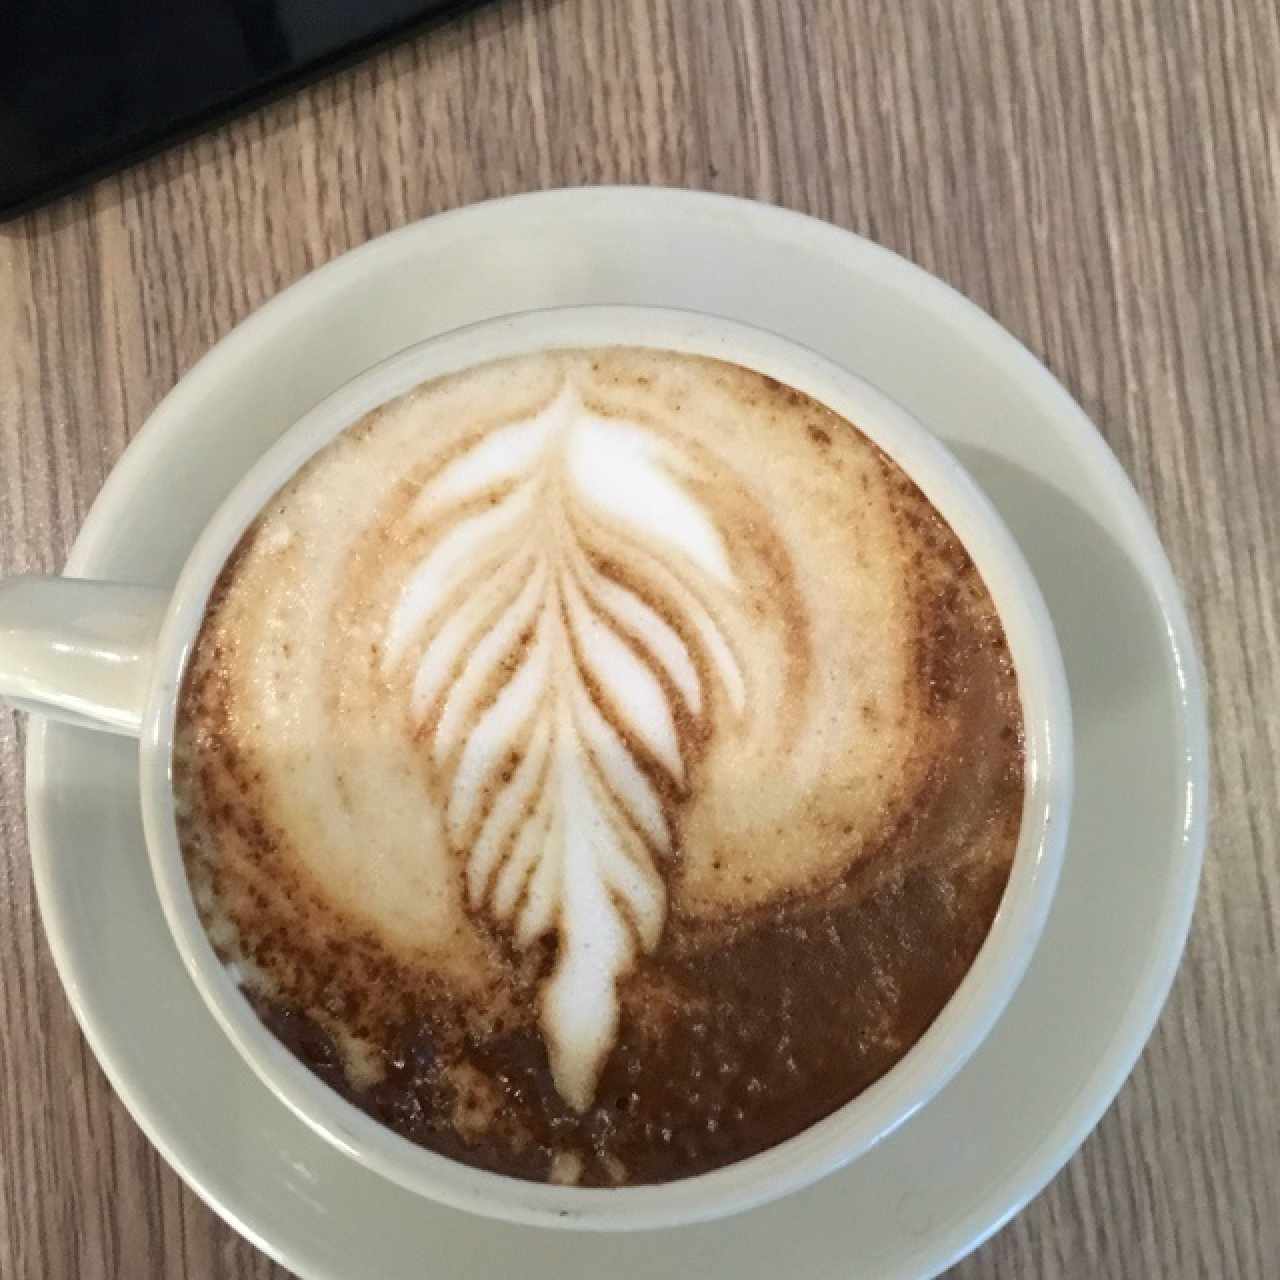 deliciousCafecapuccino